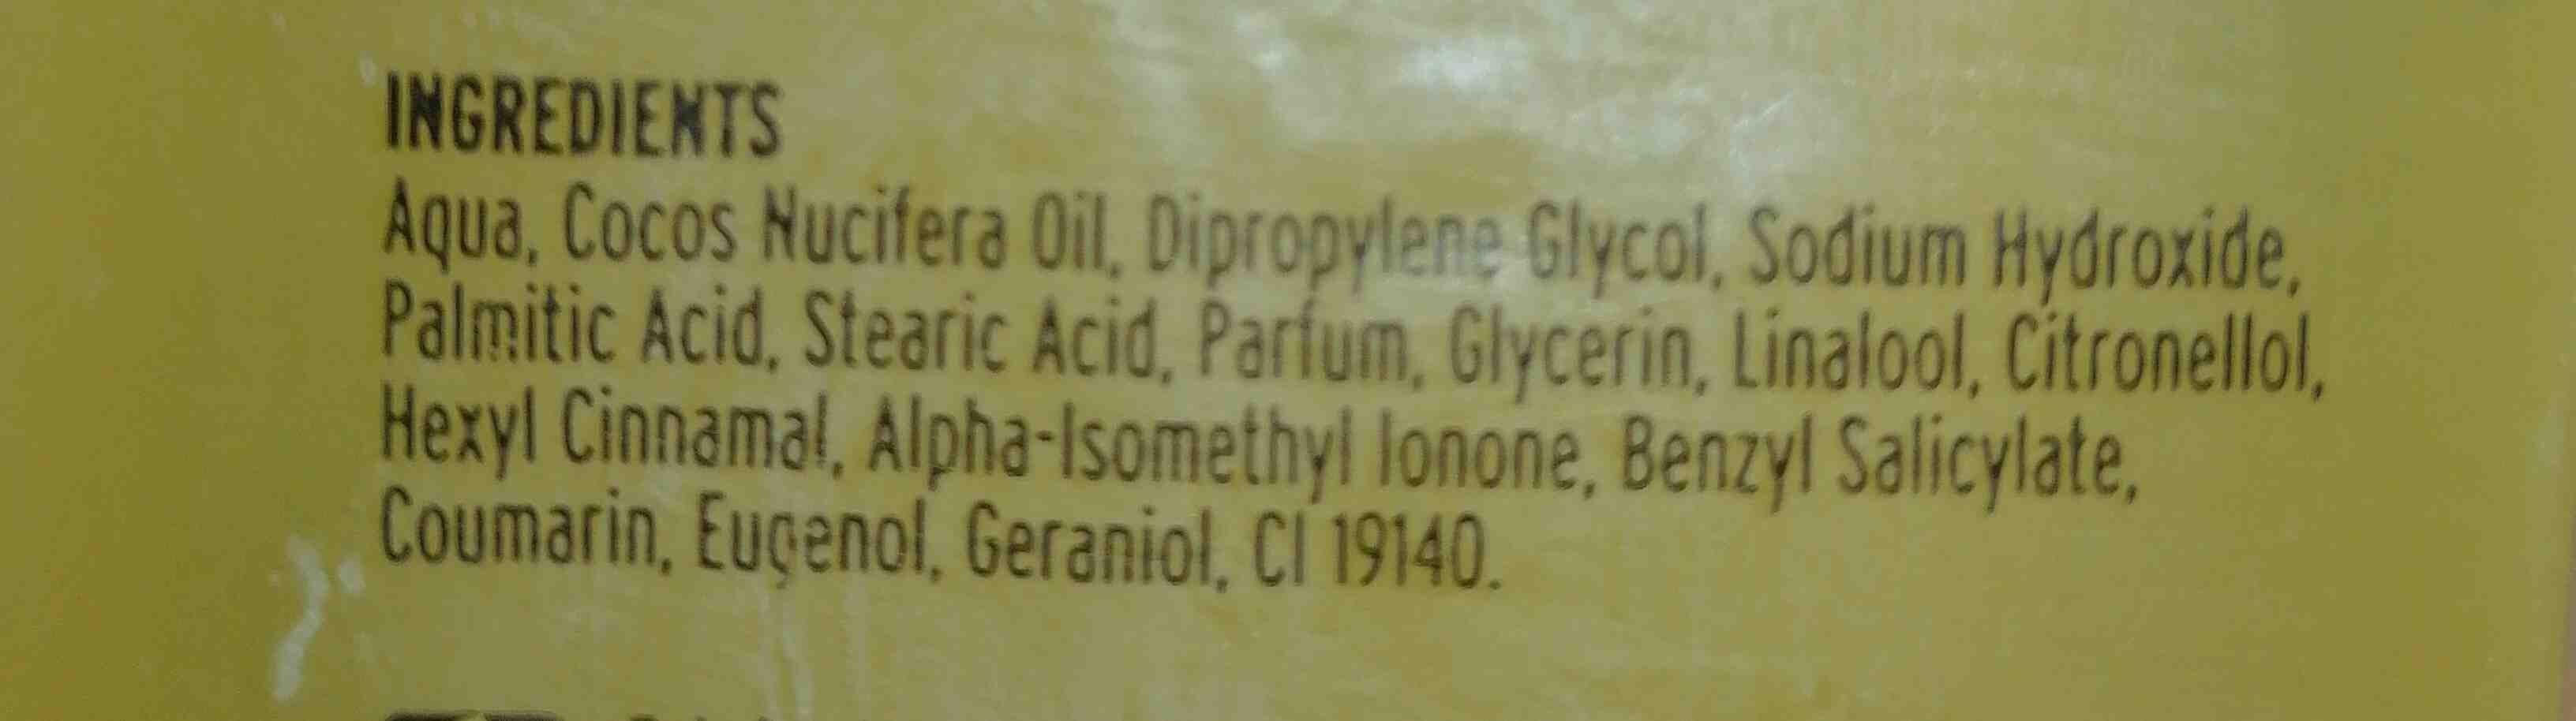 Belle glicerina jabon - Ingredientes - en